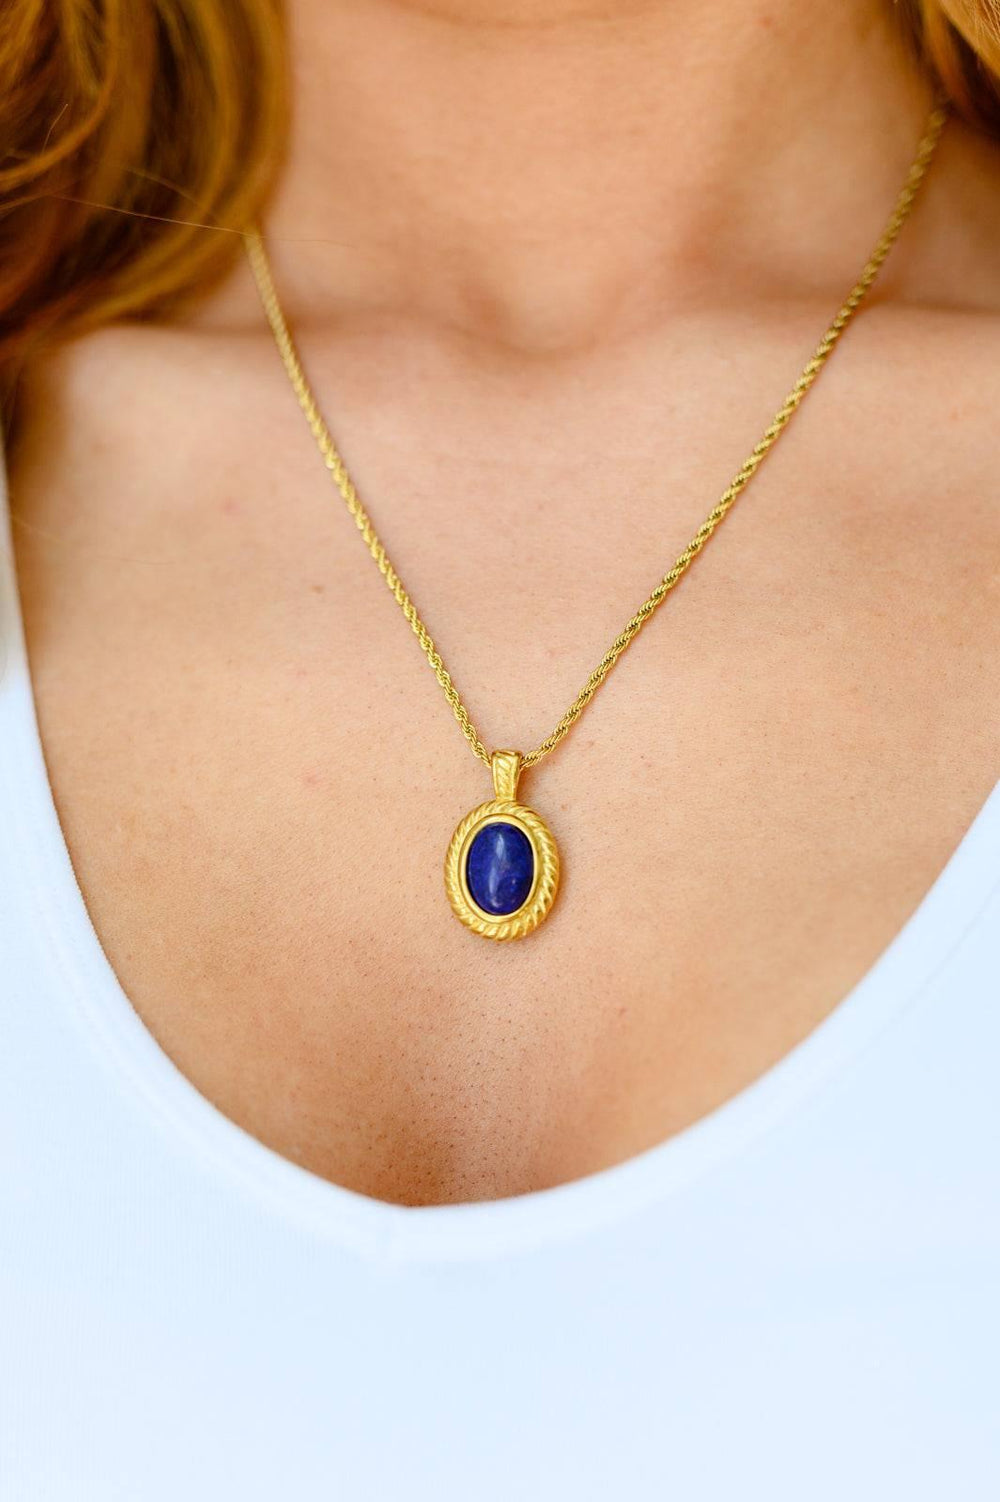 Gold Plated Lapis Lazuli Pendant Necklace Necklaces